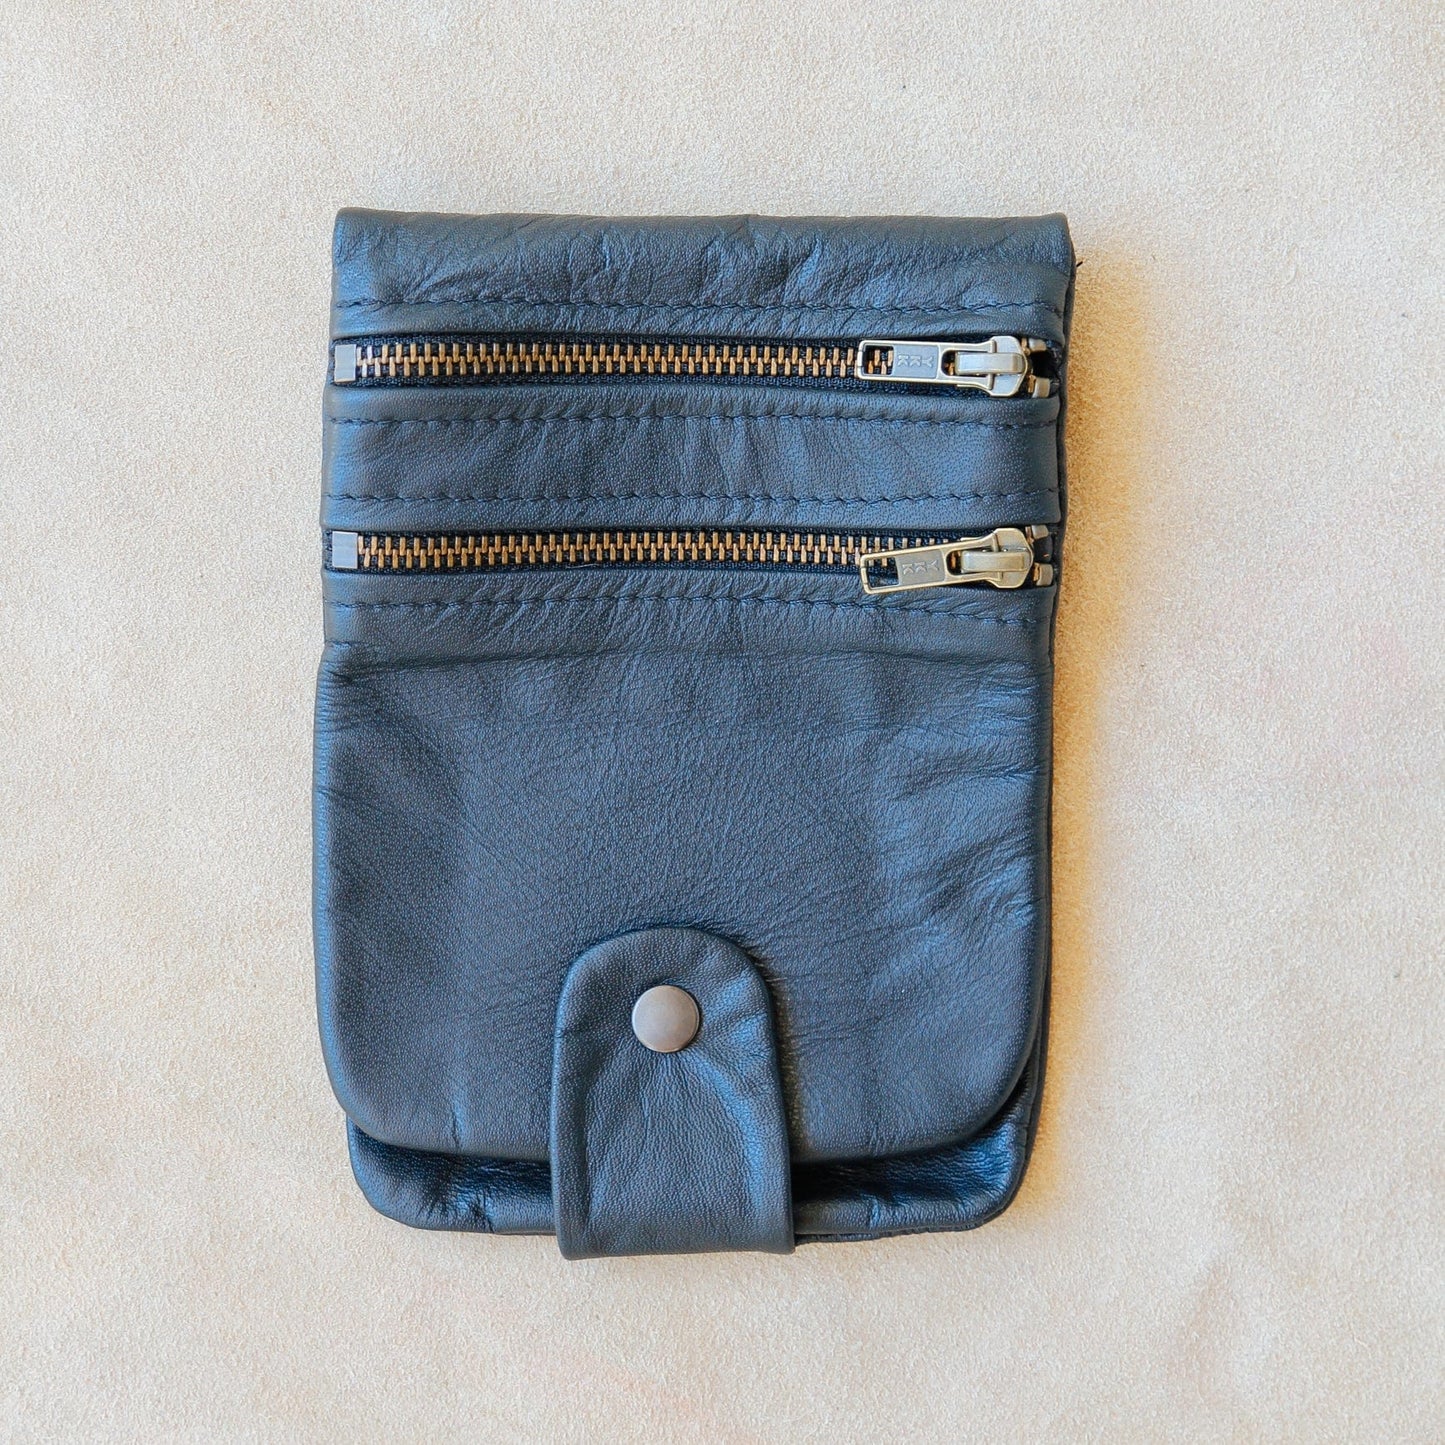 The Real McCaul Multi-Wallet Small Long / Black / Thin Multi Wallet Belt Pouch (Cowhide) Australian Made Australian Owned Made in Australia Travel Belt Multi-Wallet (Cowhide Leather)